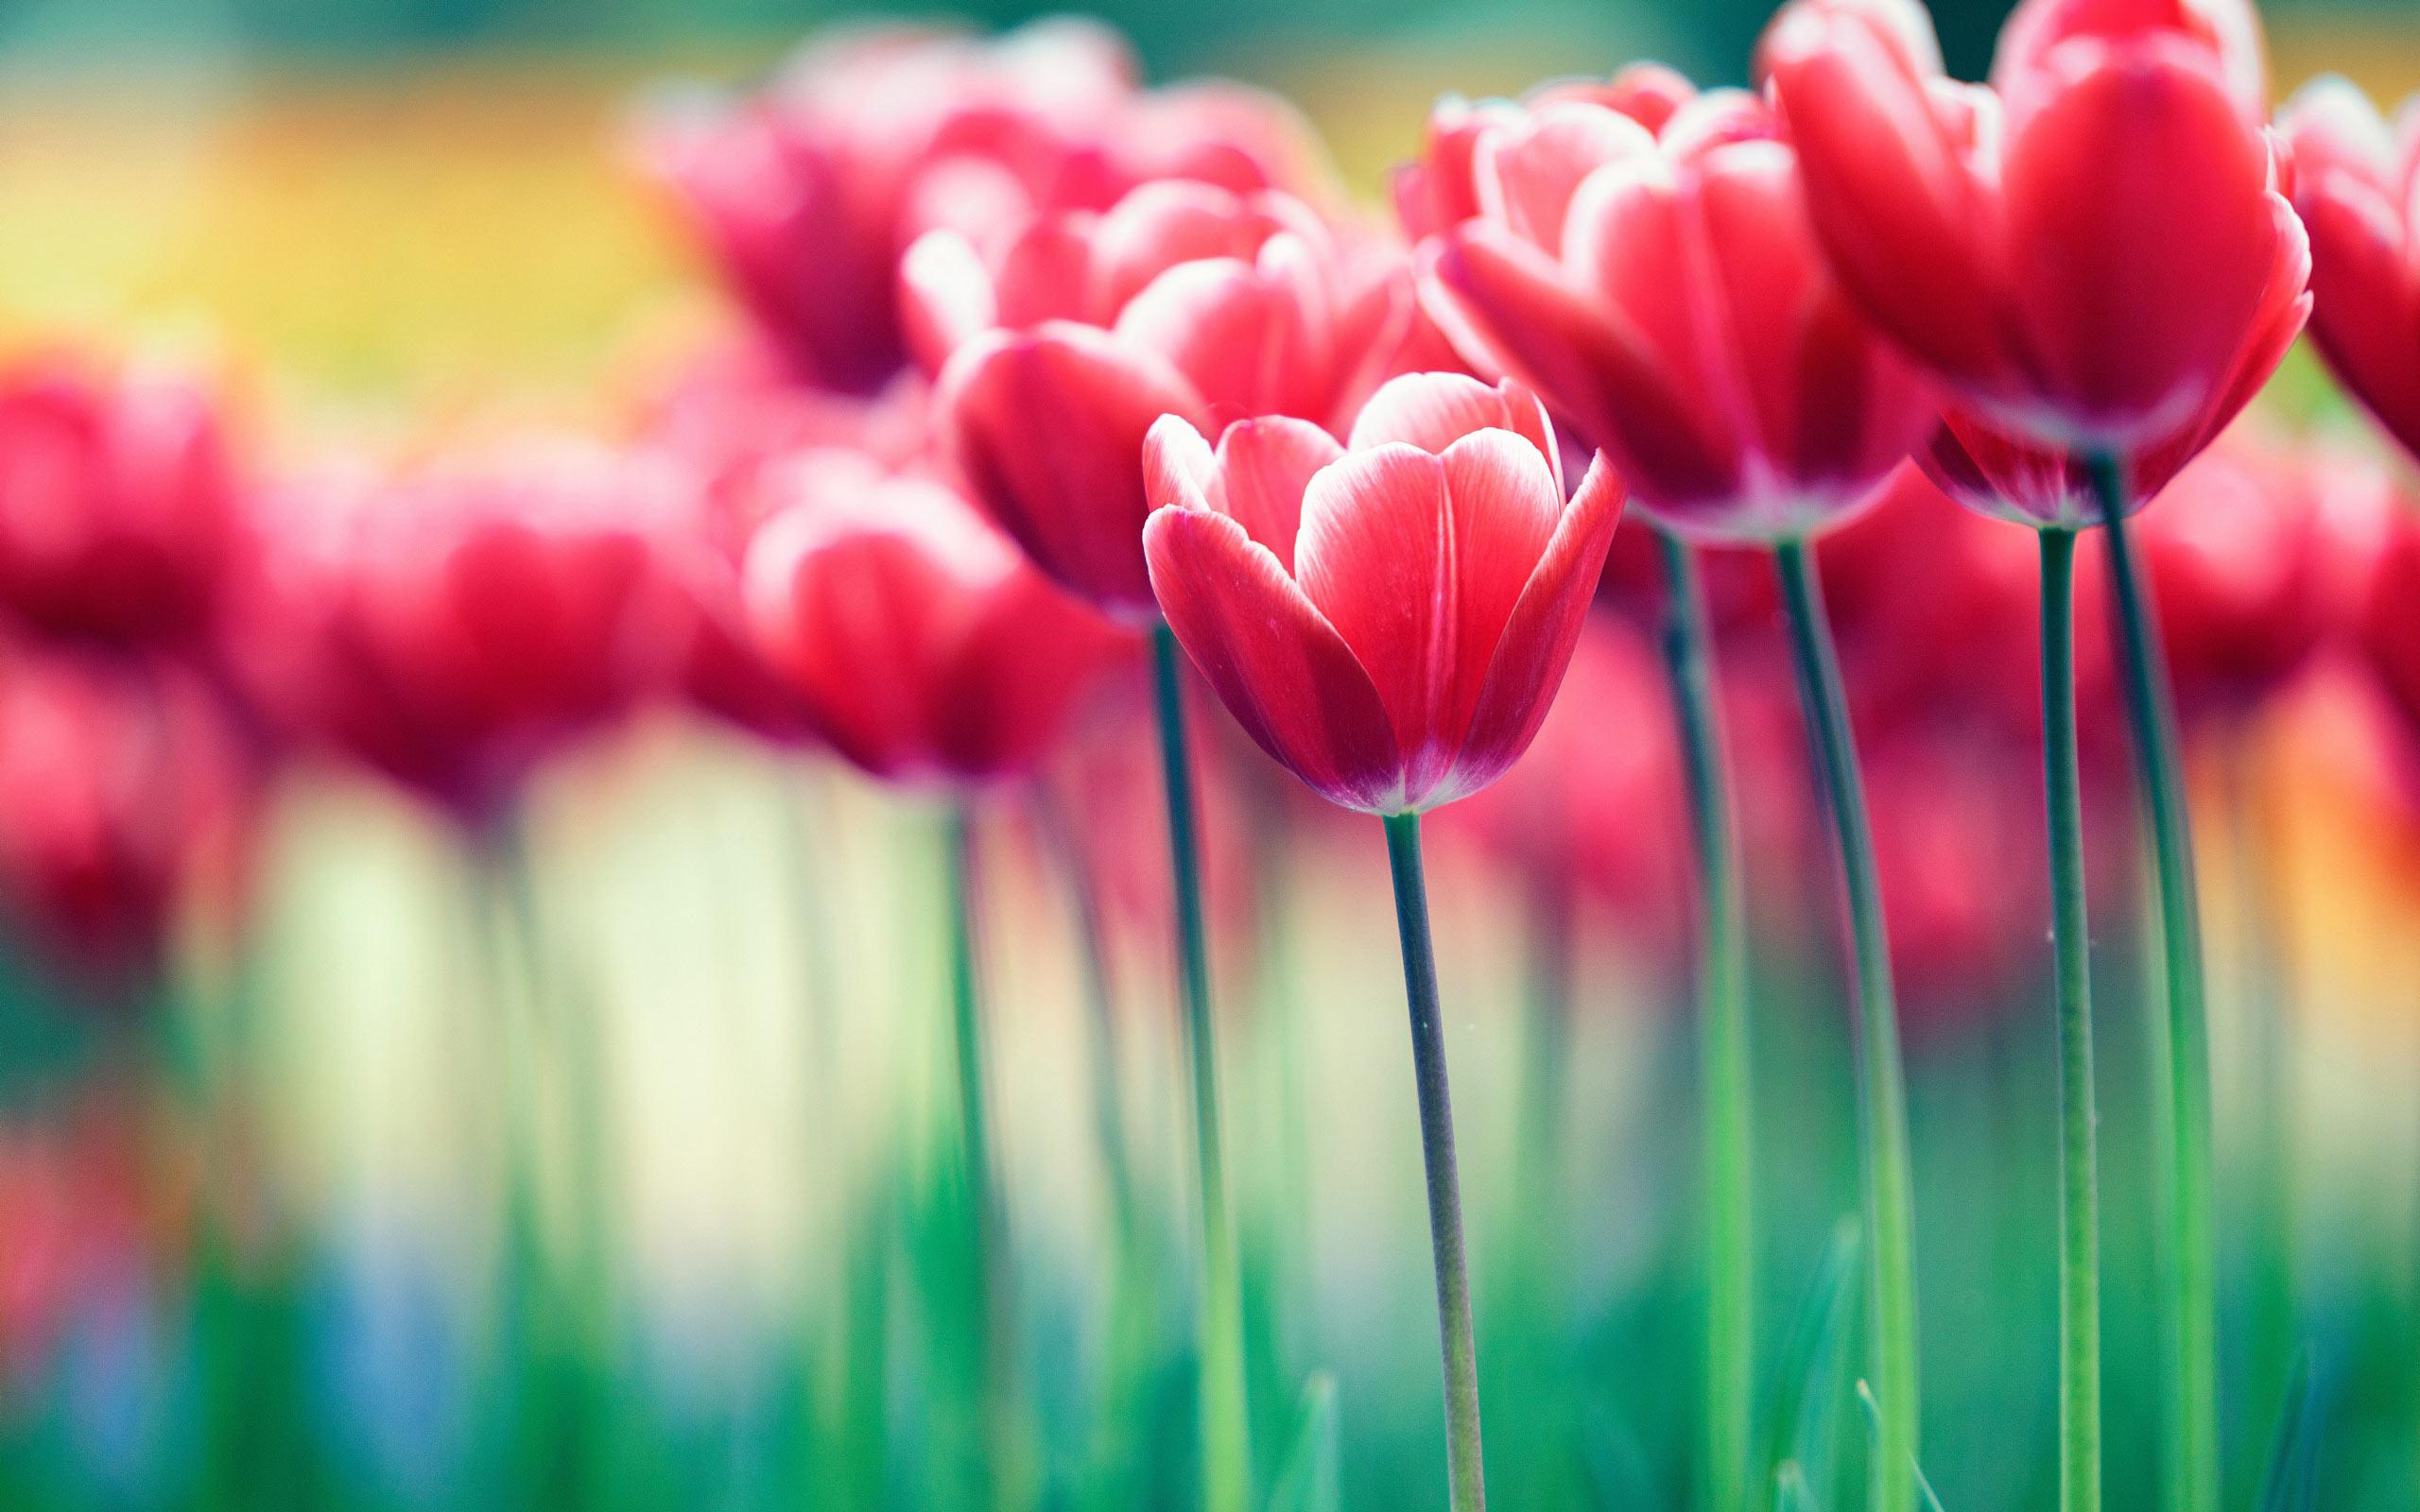 Spring Flower Garden Desktop Wallpapers - Top Free Spring Flower Garden ...